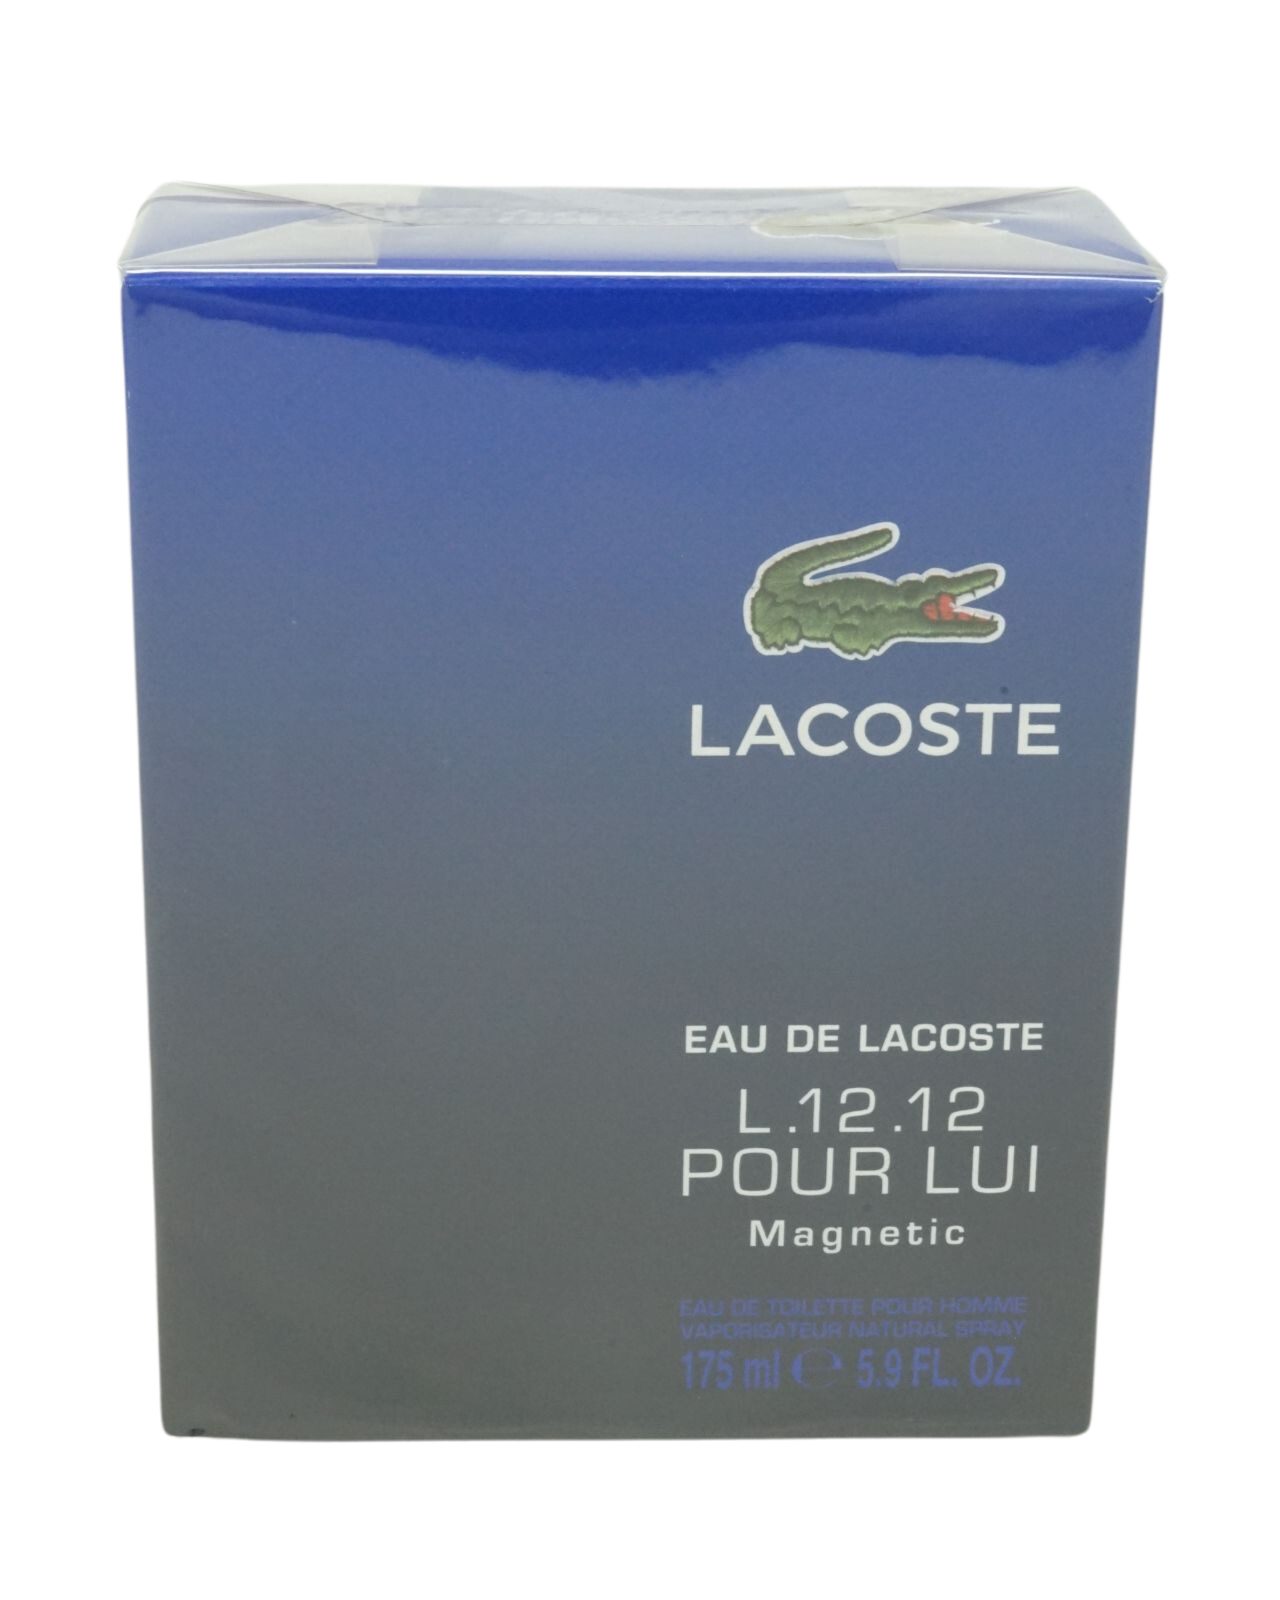 EDT Lacoste Lacoste L.12.12 de Pour Eau 175ml Lui Körperpflegeduft Magnetic